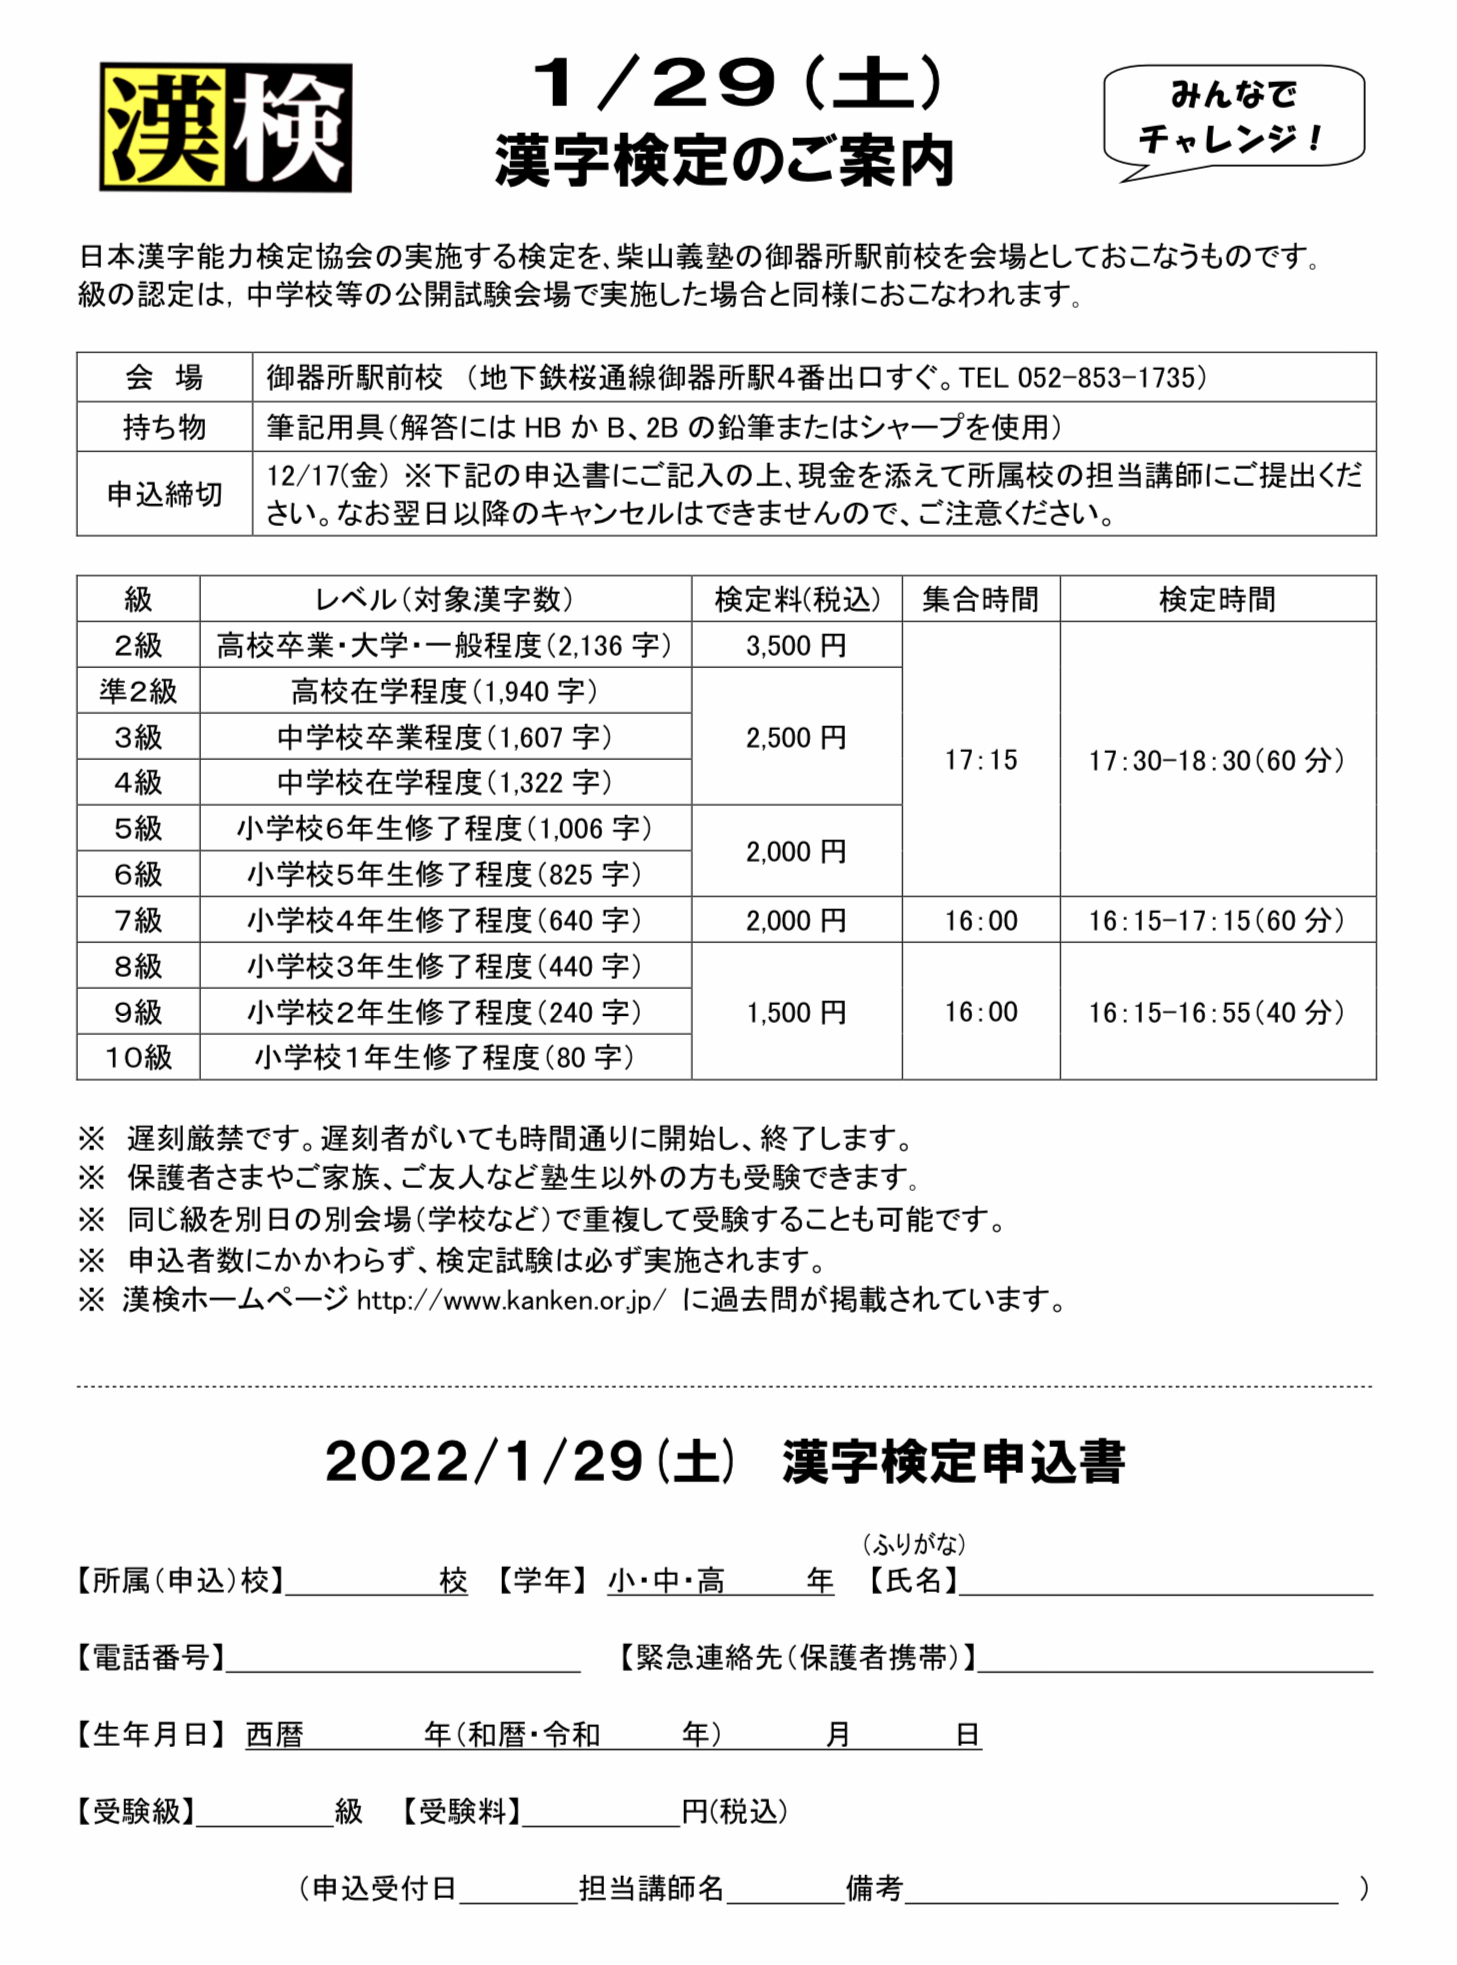 漢字 検定 日程 2022